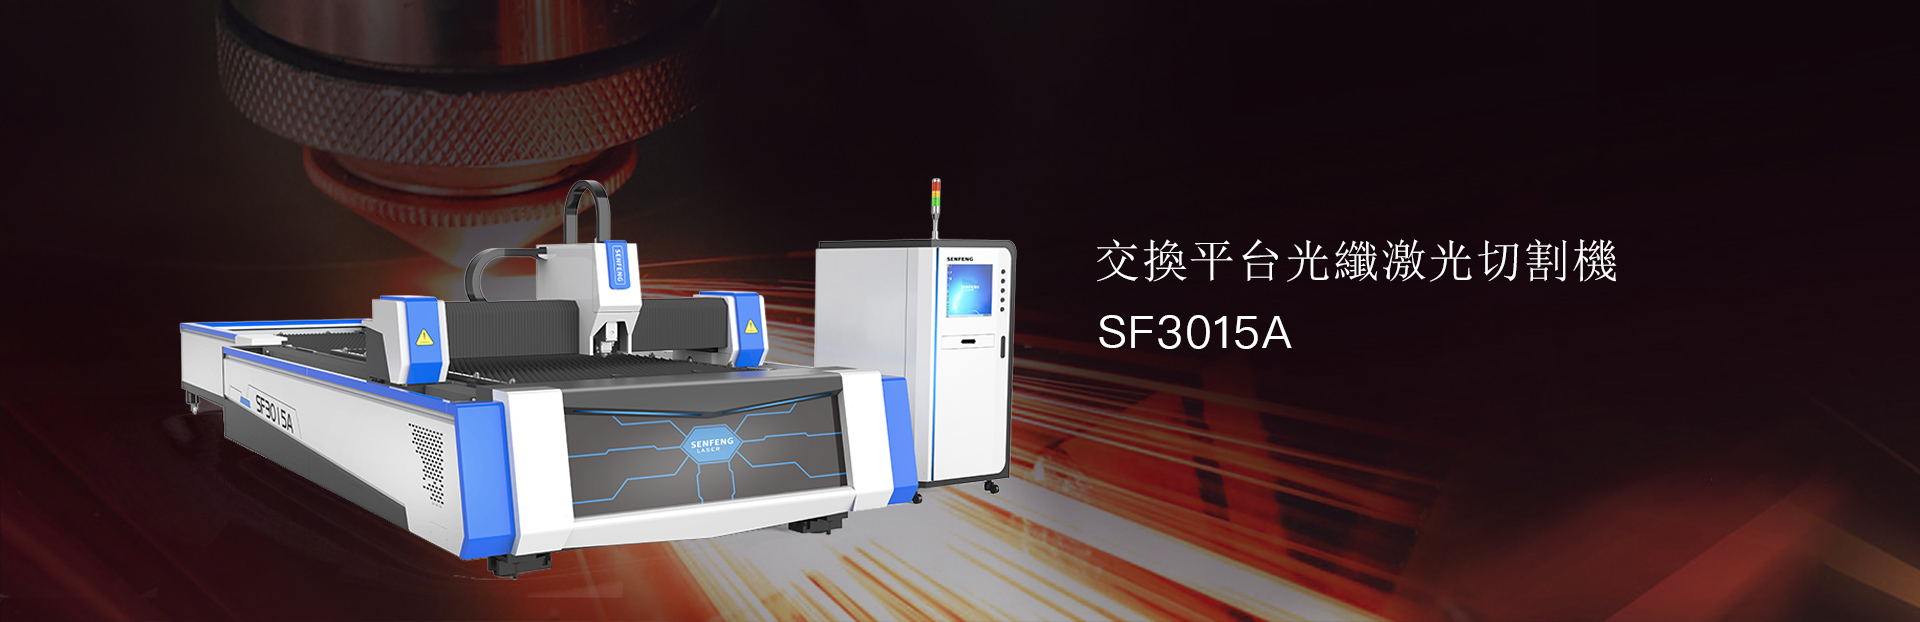 金屬板光纖激光切割機SF3015A